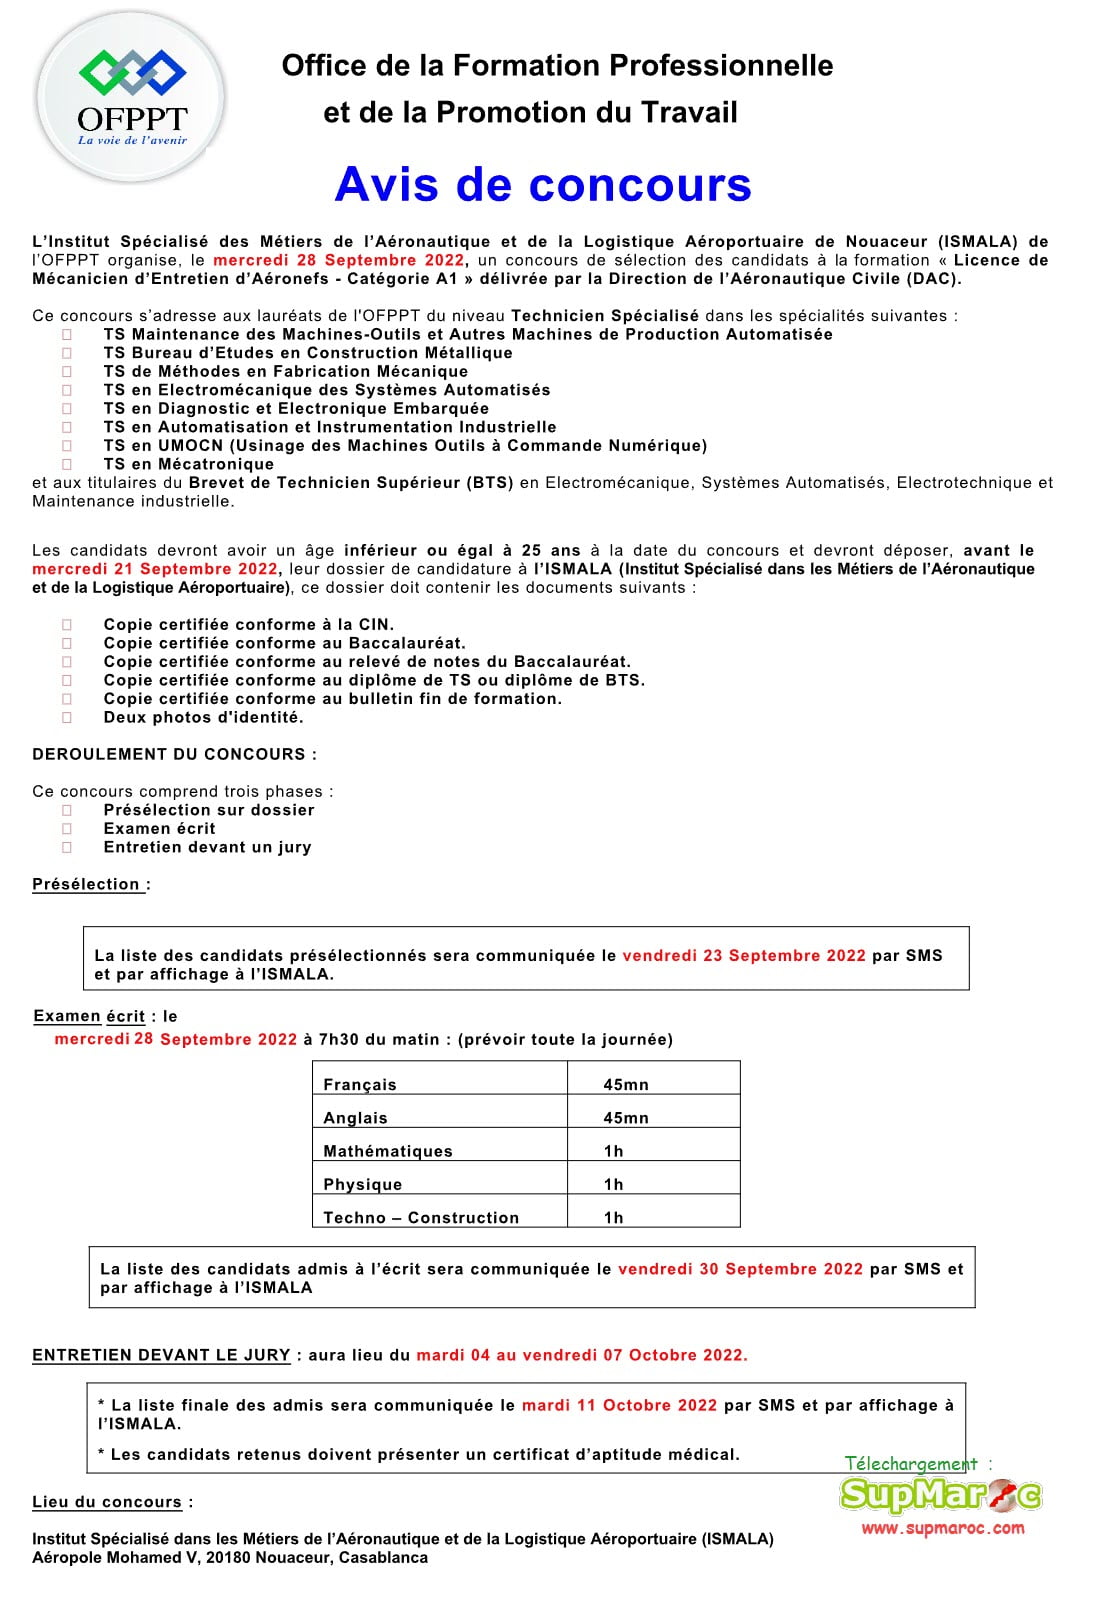 ISMALA OFPPT LP Mécanicien aéronefs A1 DAC 2022-2023